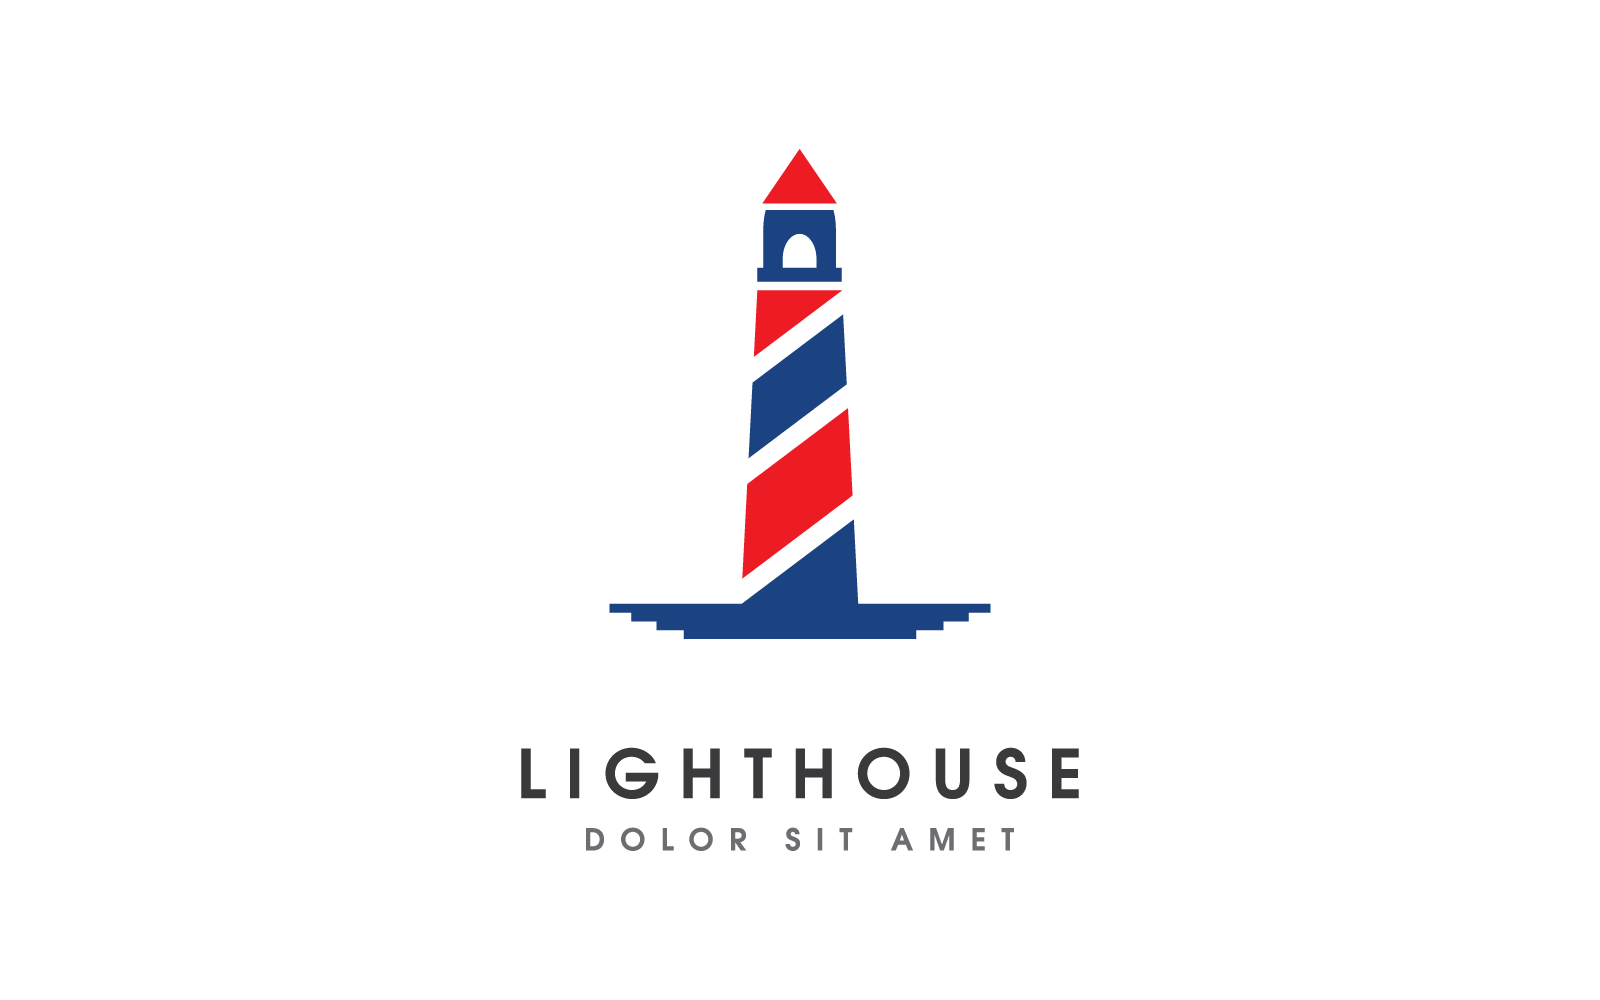 Diseño vectorial del logotipo de la casa ligera